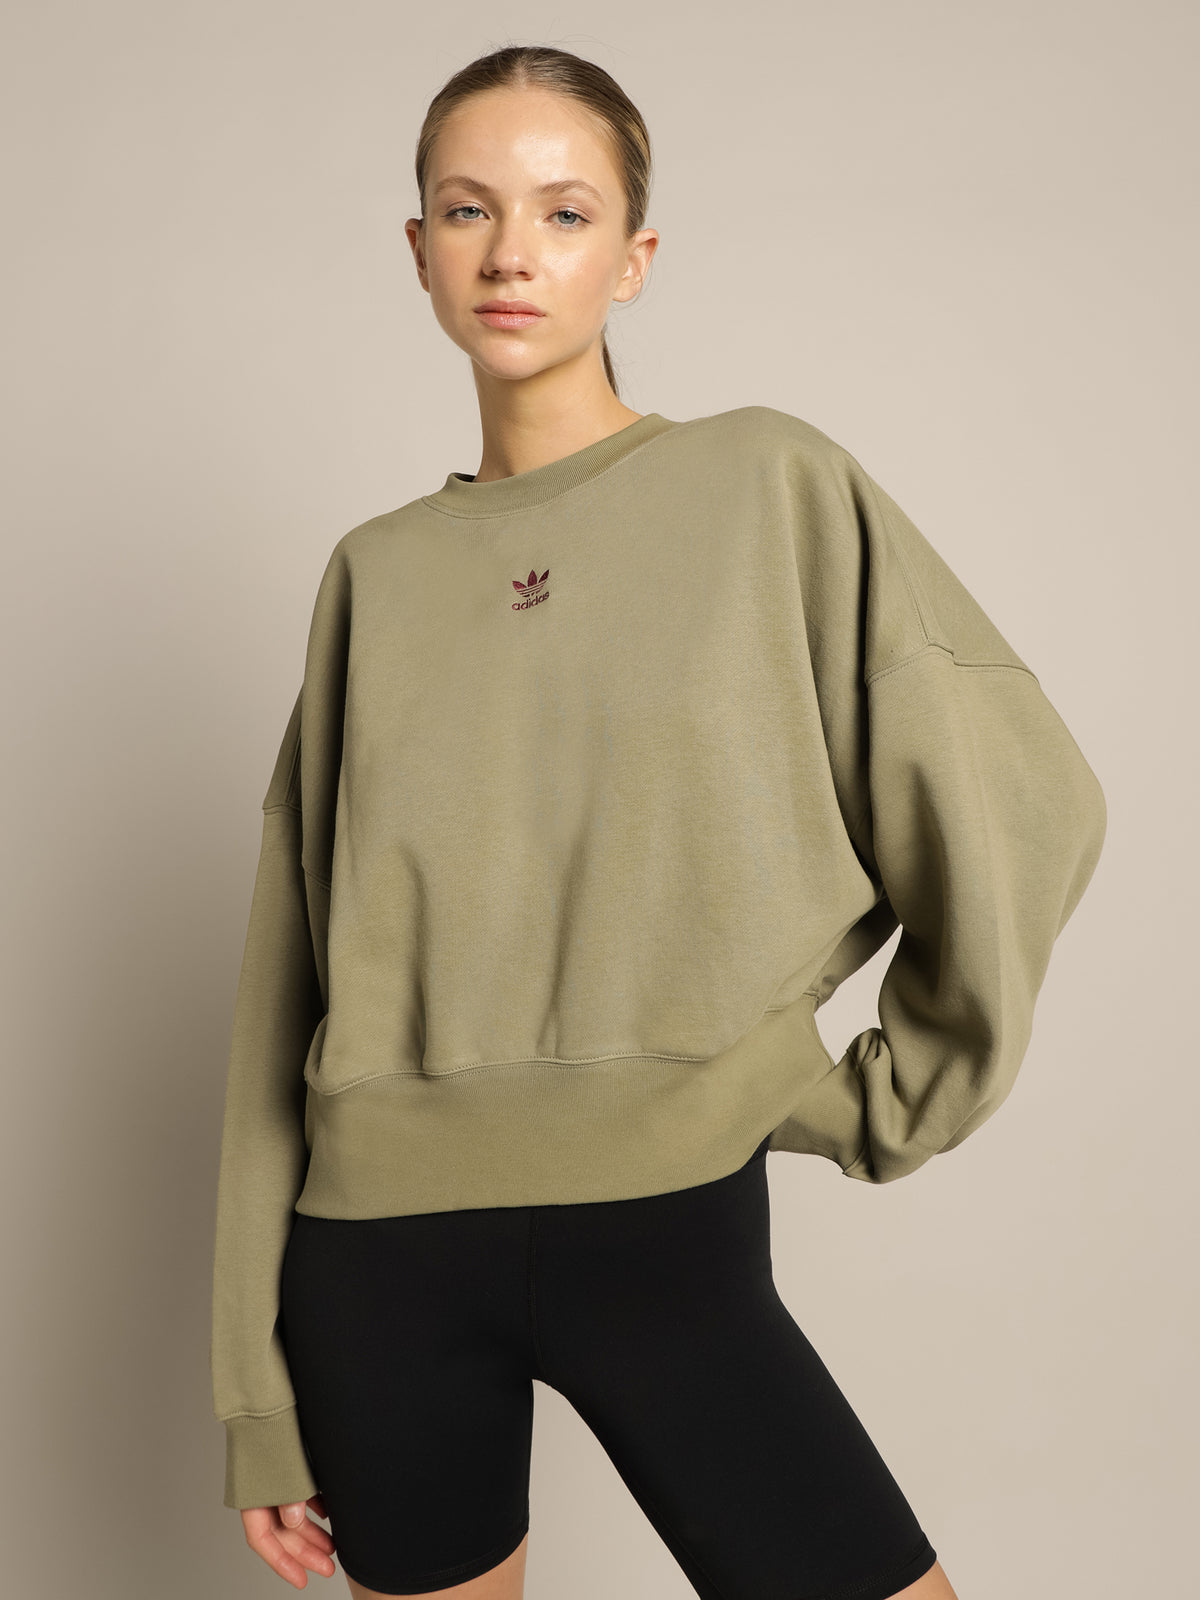 Originals Essentials Fleece Sweatshirt in Orbit Green